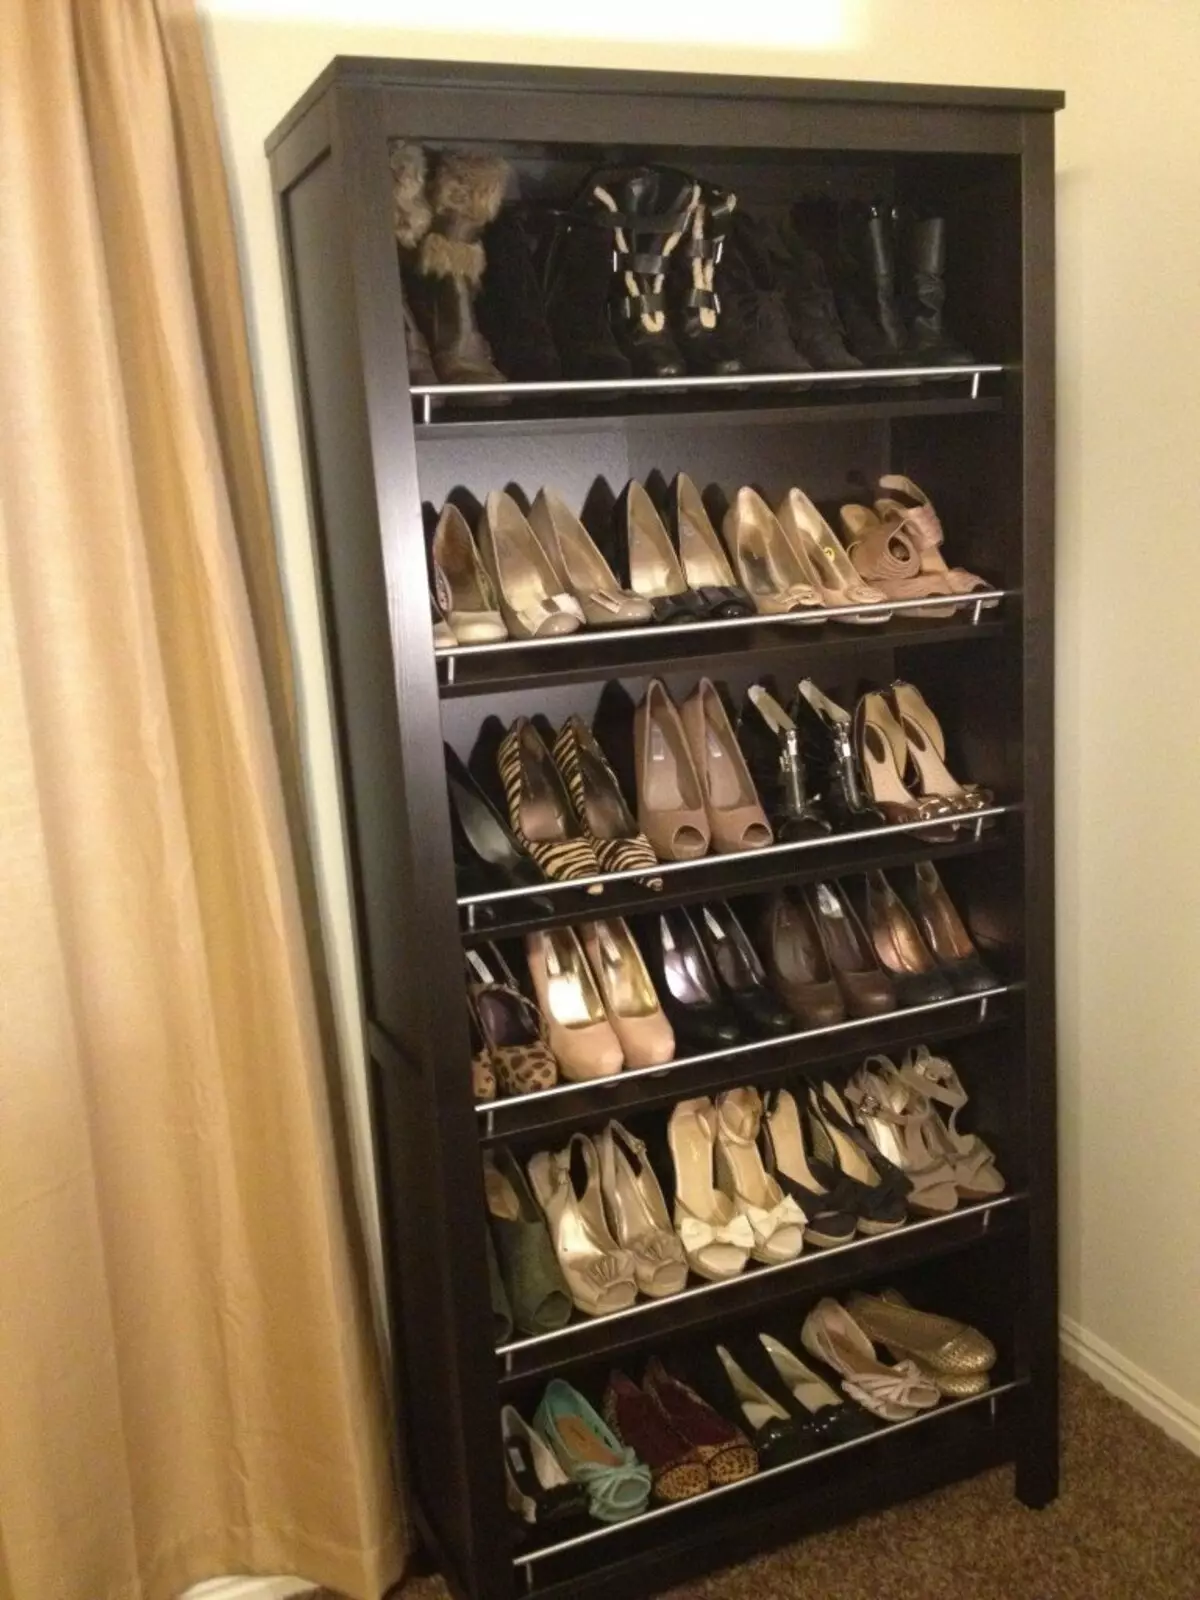 ہالے میں جوتے کے لئے وارڈروبس (61 فوٹو): تنگ اور وسیع جوتے کی الماریاں، اسسمیٹک دروازوں کے ساتھ کابینہ، اعلی کونیی جوتے اور دیگر اختیارات 9327_35